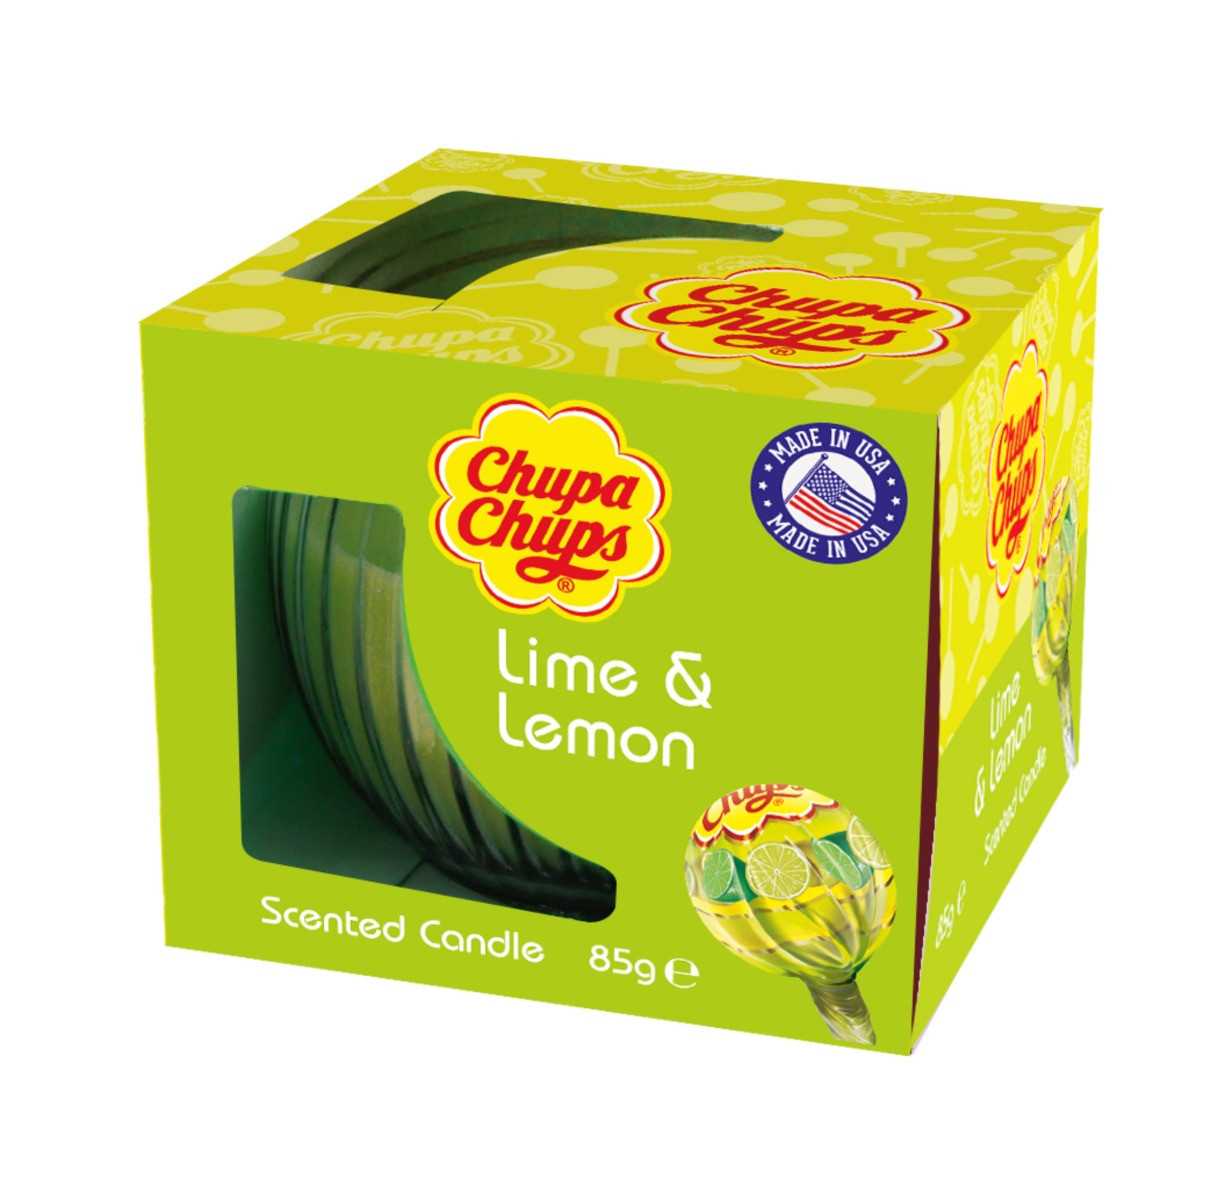 Chupa Chups Boxed Candle - Lime & Lemon>